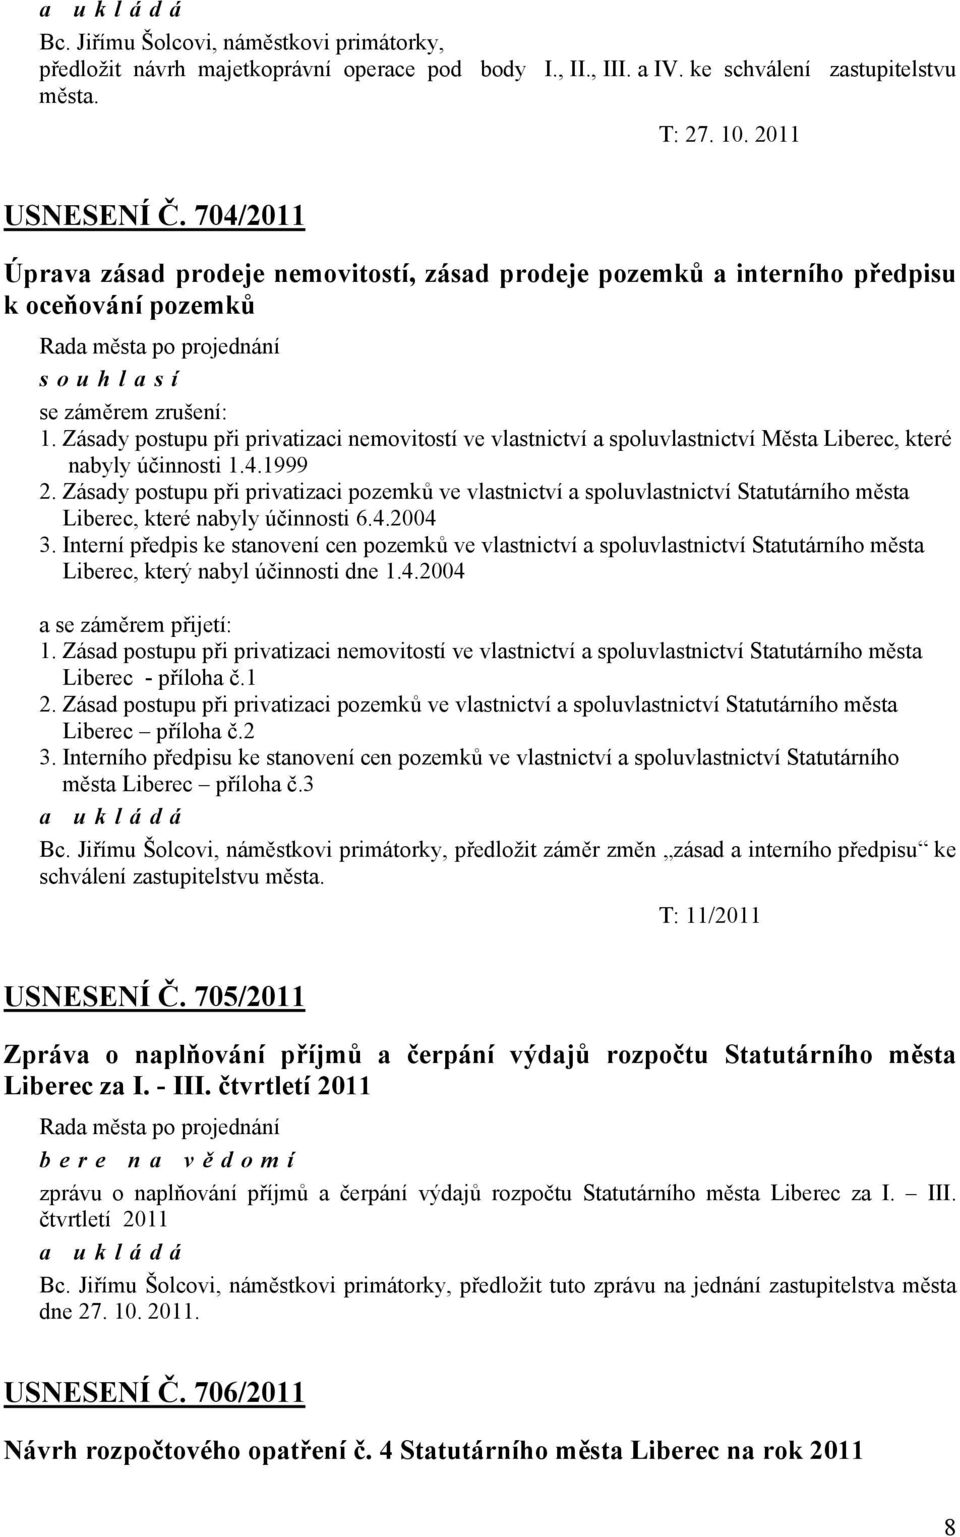 Zásady postupu při privatizaci nemovitostí ve vlastnictví a spoluvlastnictví Města Liberec, které nabyly účinnosti 1.4.1999 2.